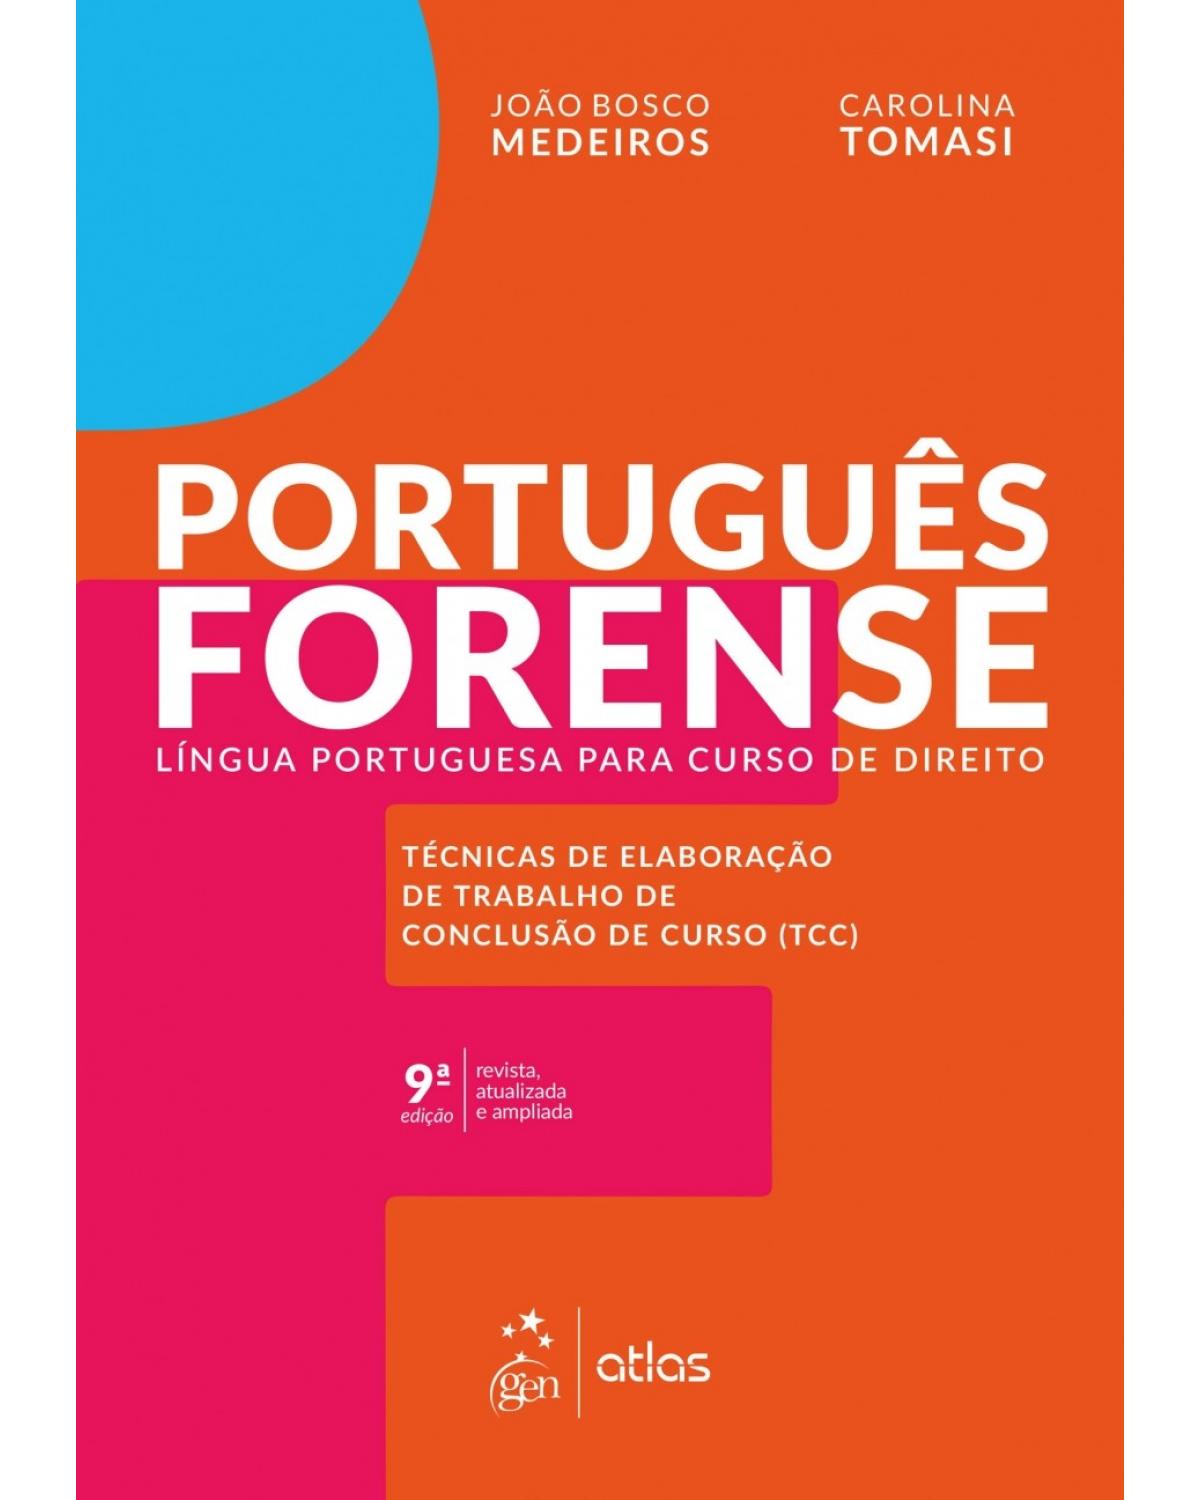 Português forense - língua portuguesa para curso de direito - 9ª Edição | 2018